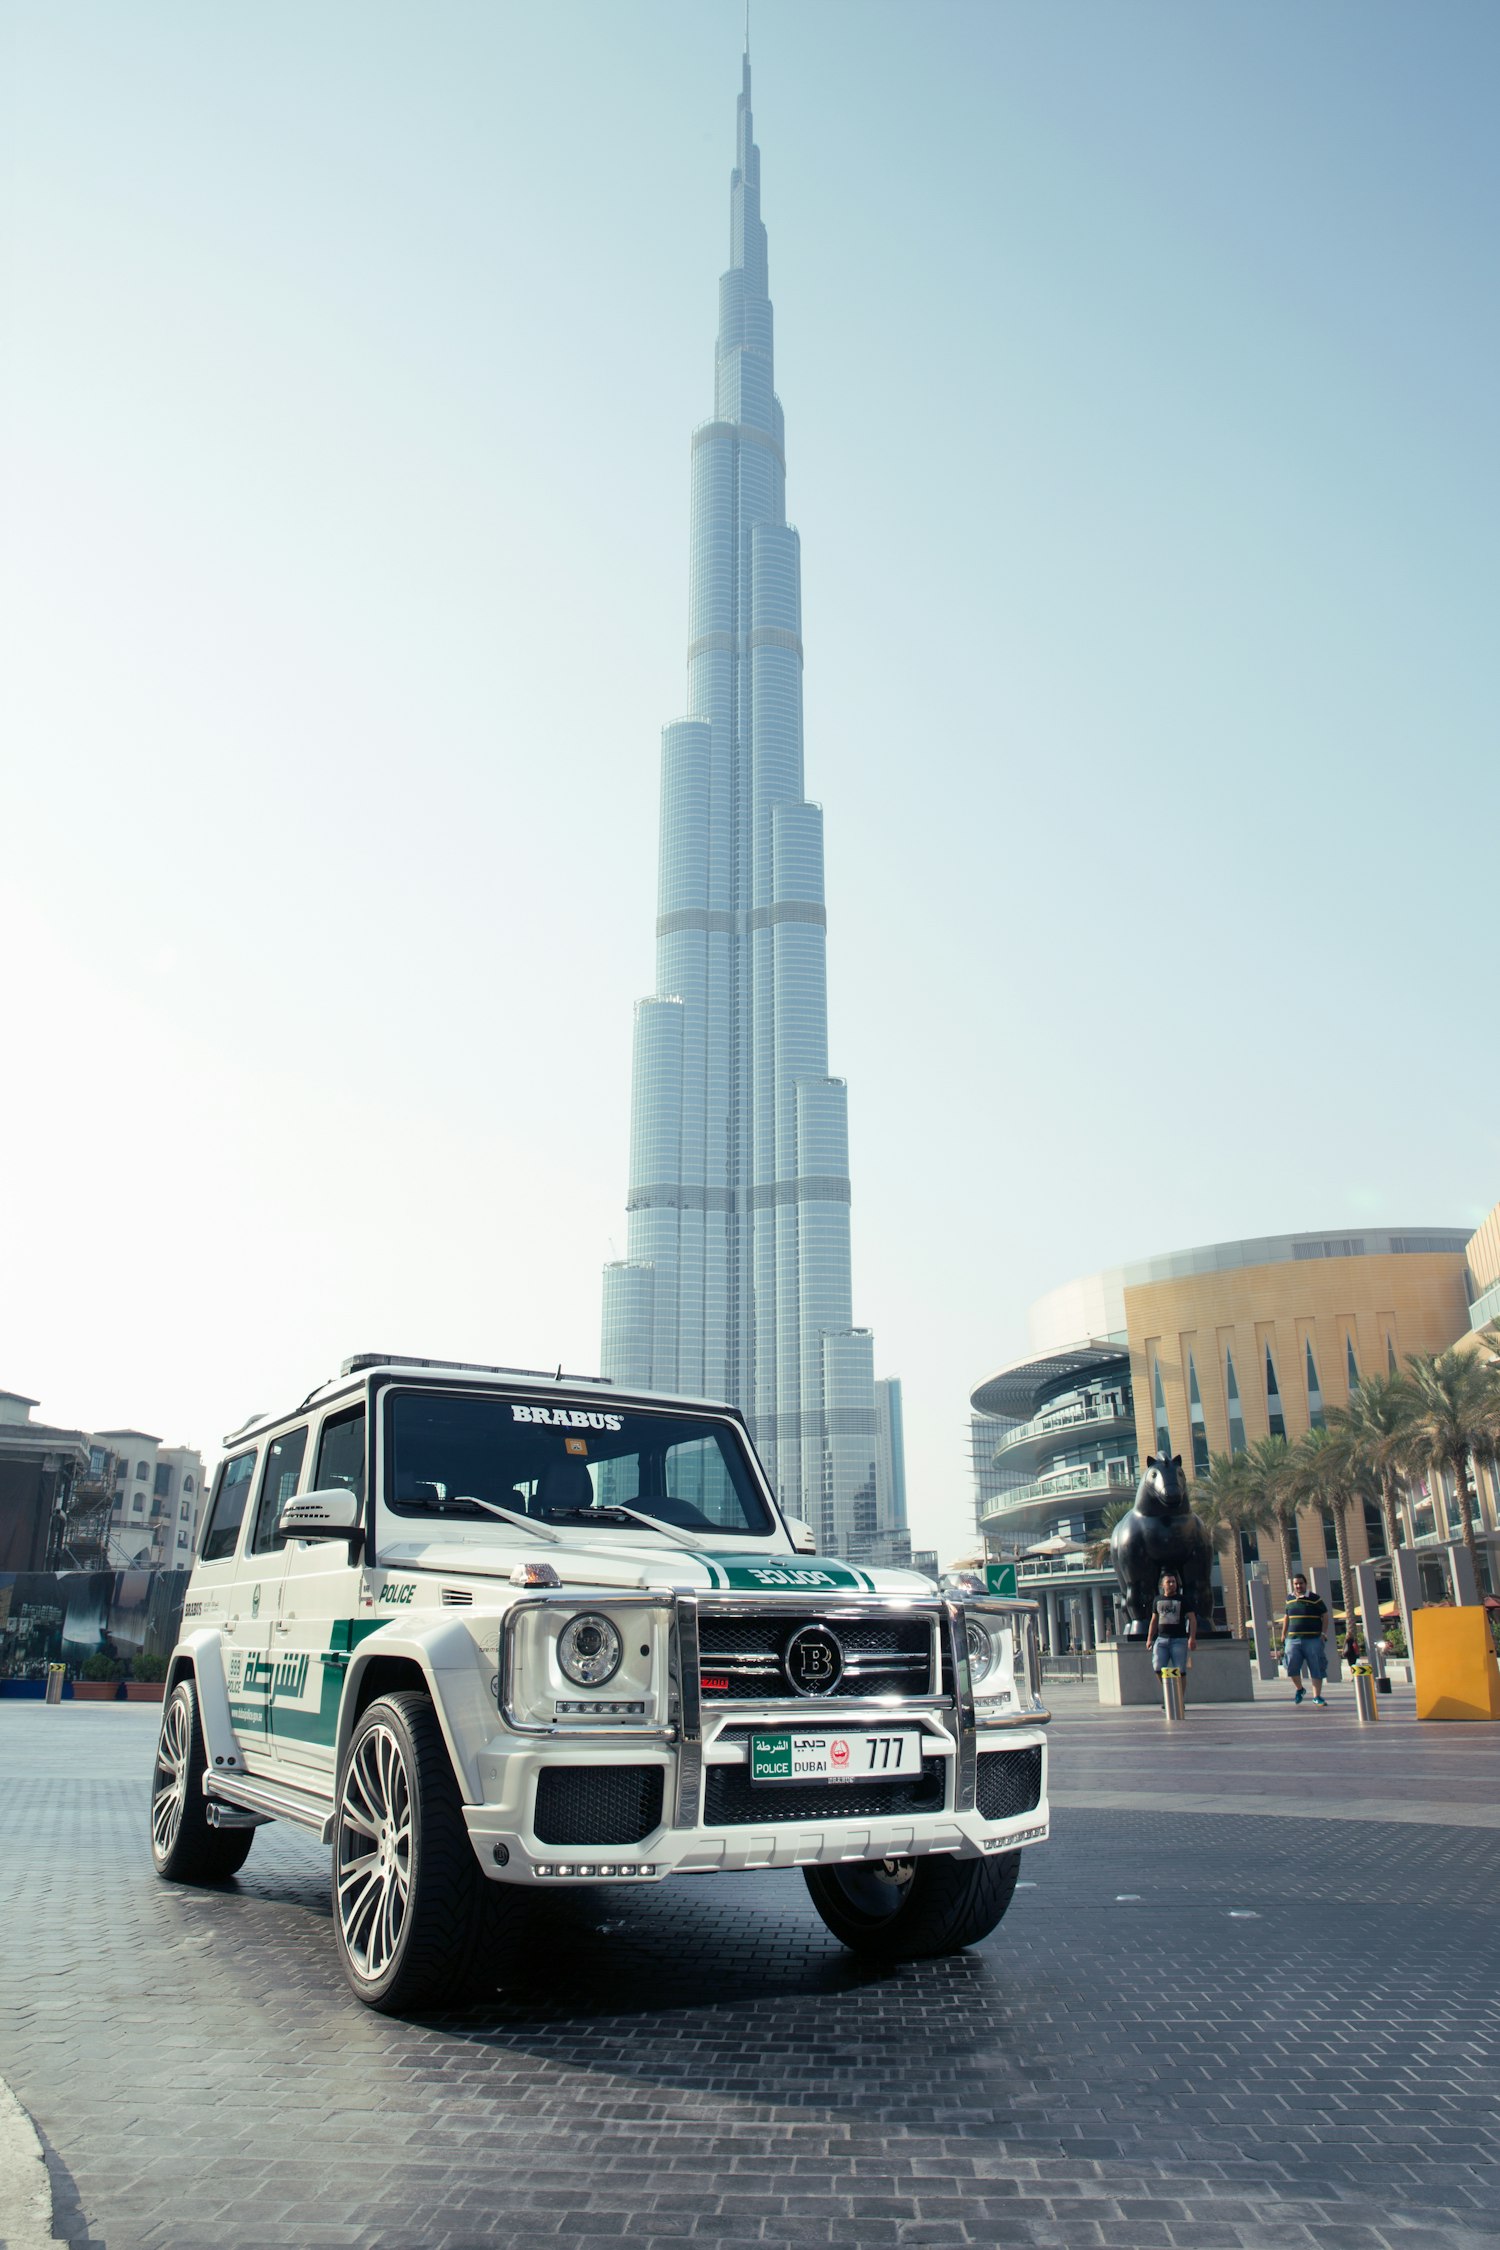 Uae cars. Mercedes g63 AMG. Брабус в Дубае. Mercedes Benz g63 AMG Dubai. Mercedes g63 Brabus Dubai.